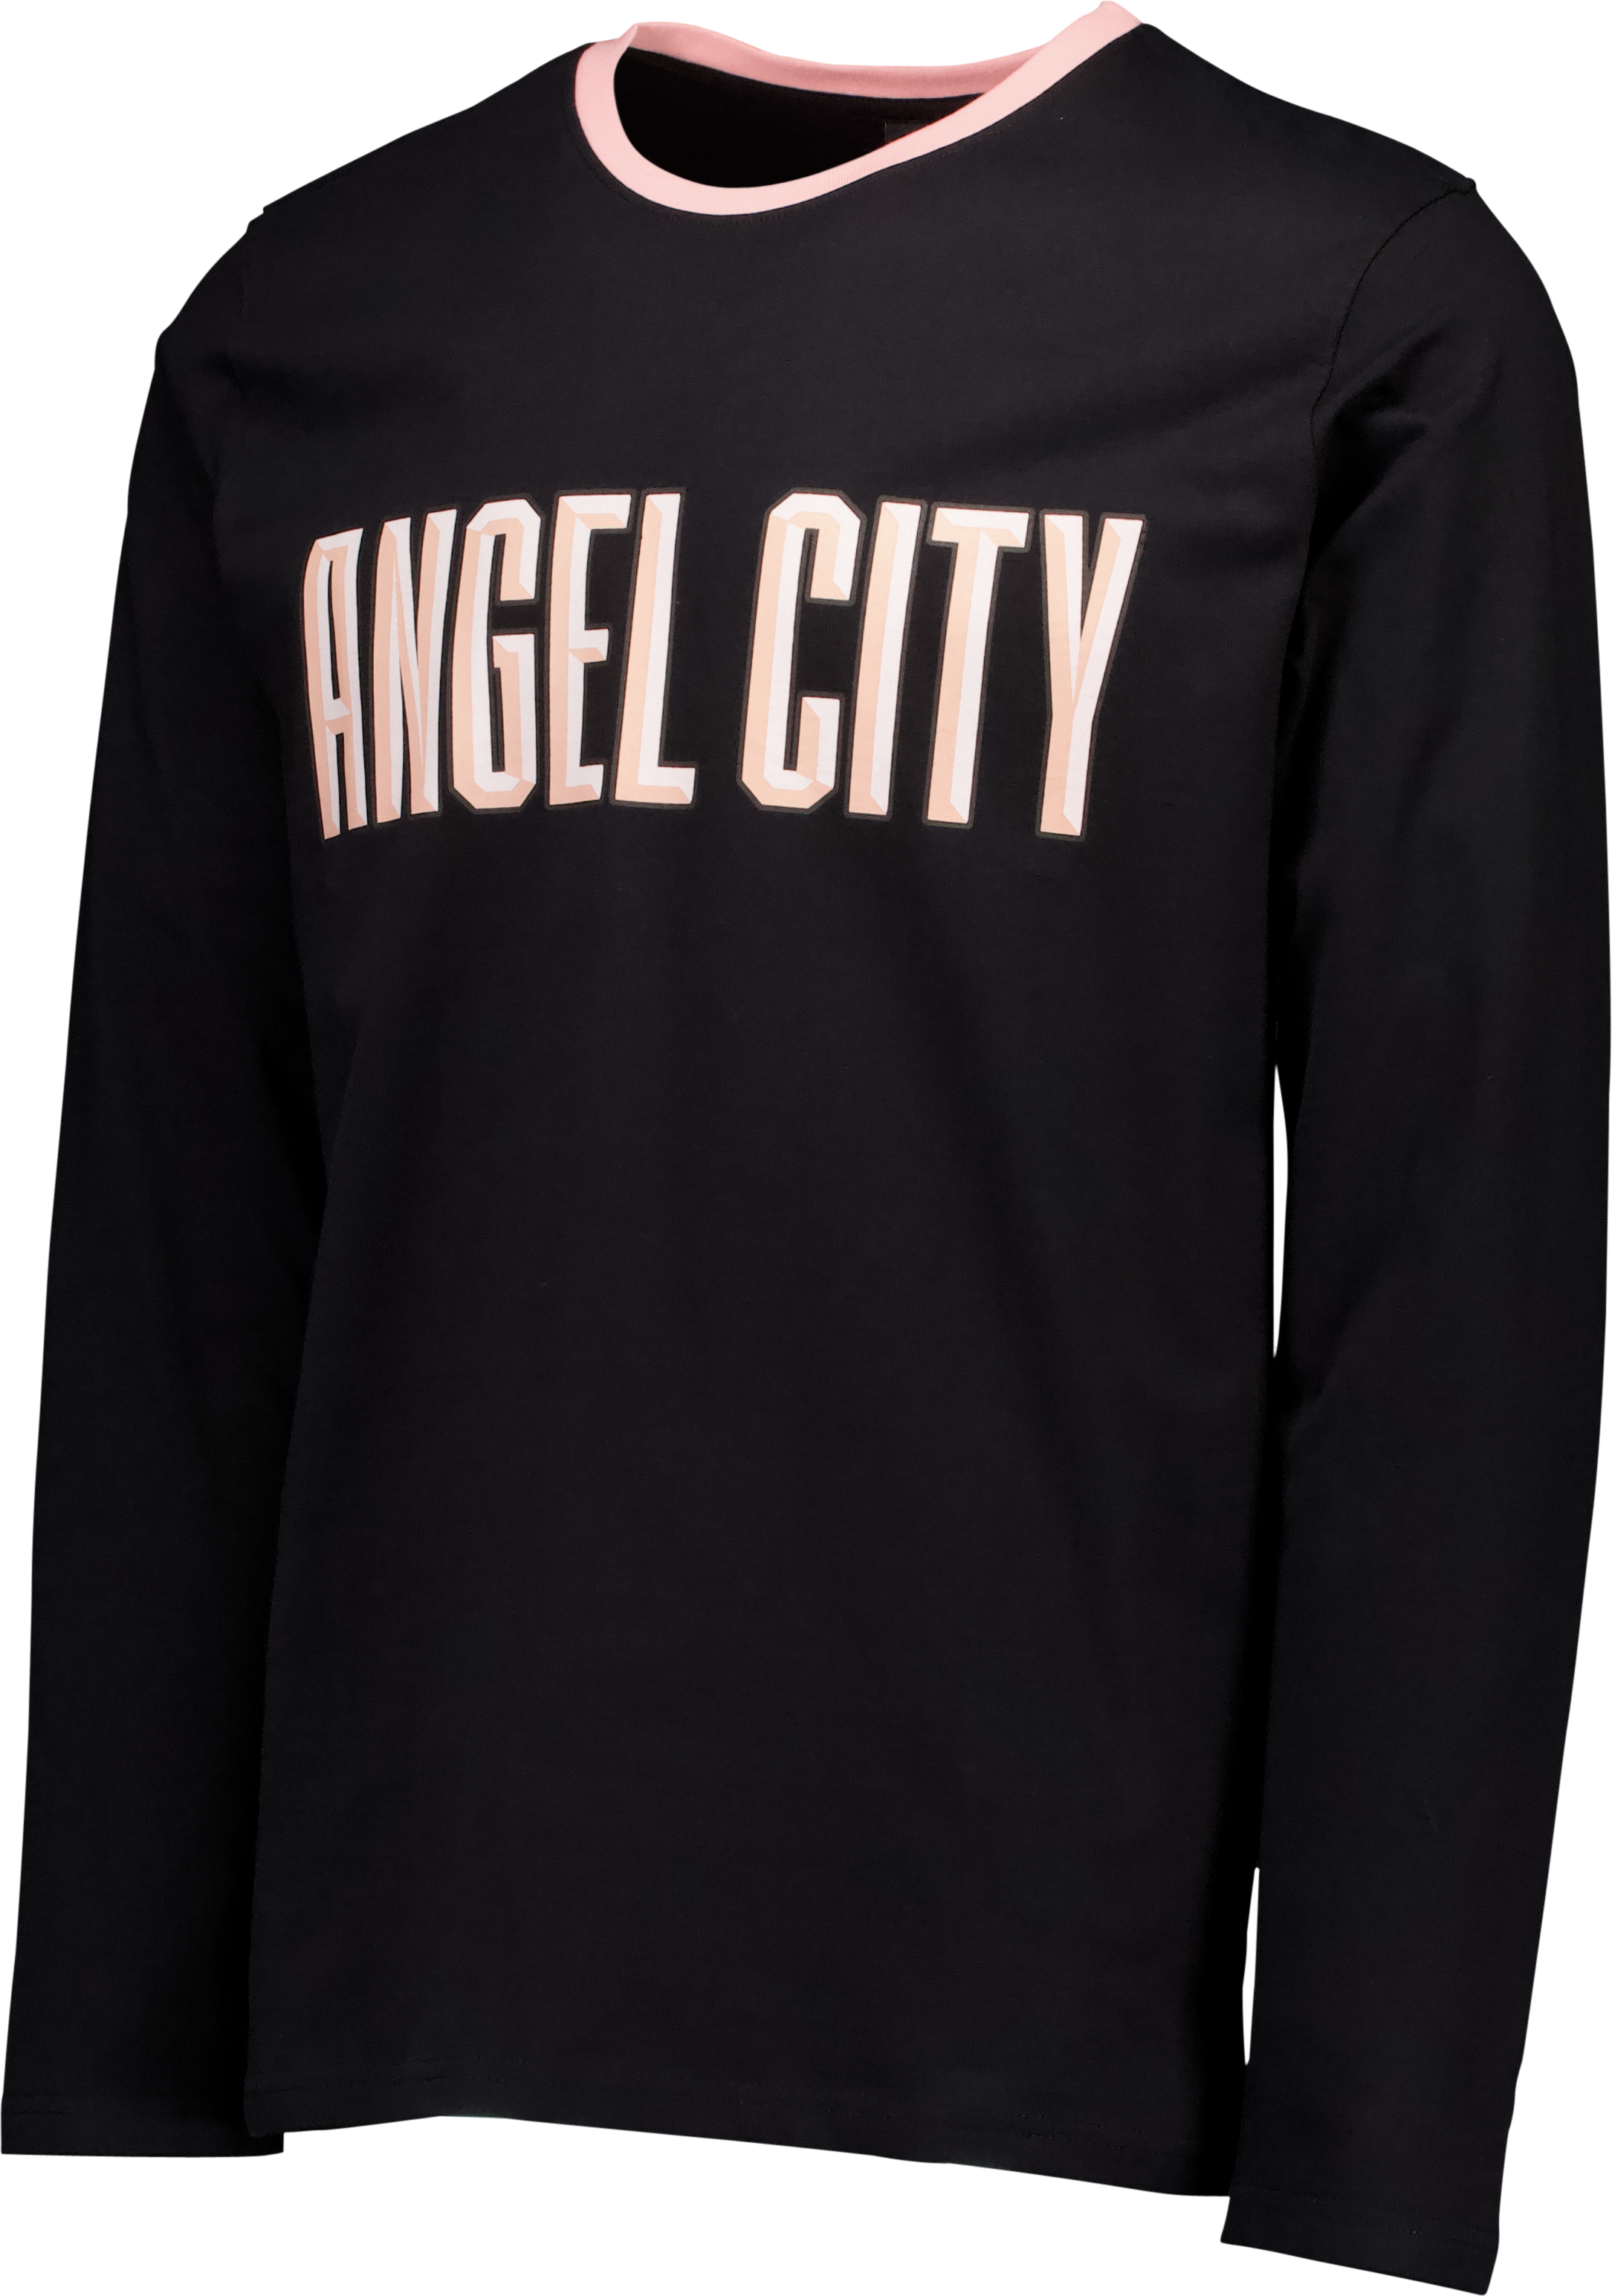 AngelCityFCUnisexBlackRelaxedFitLong-SleeveT-Shirt.png